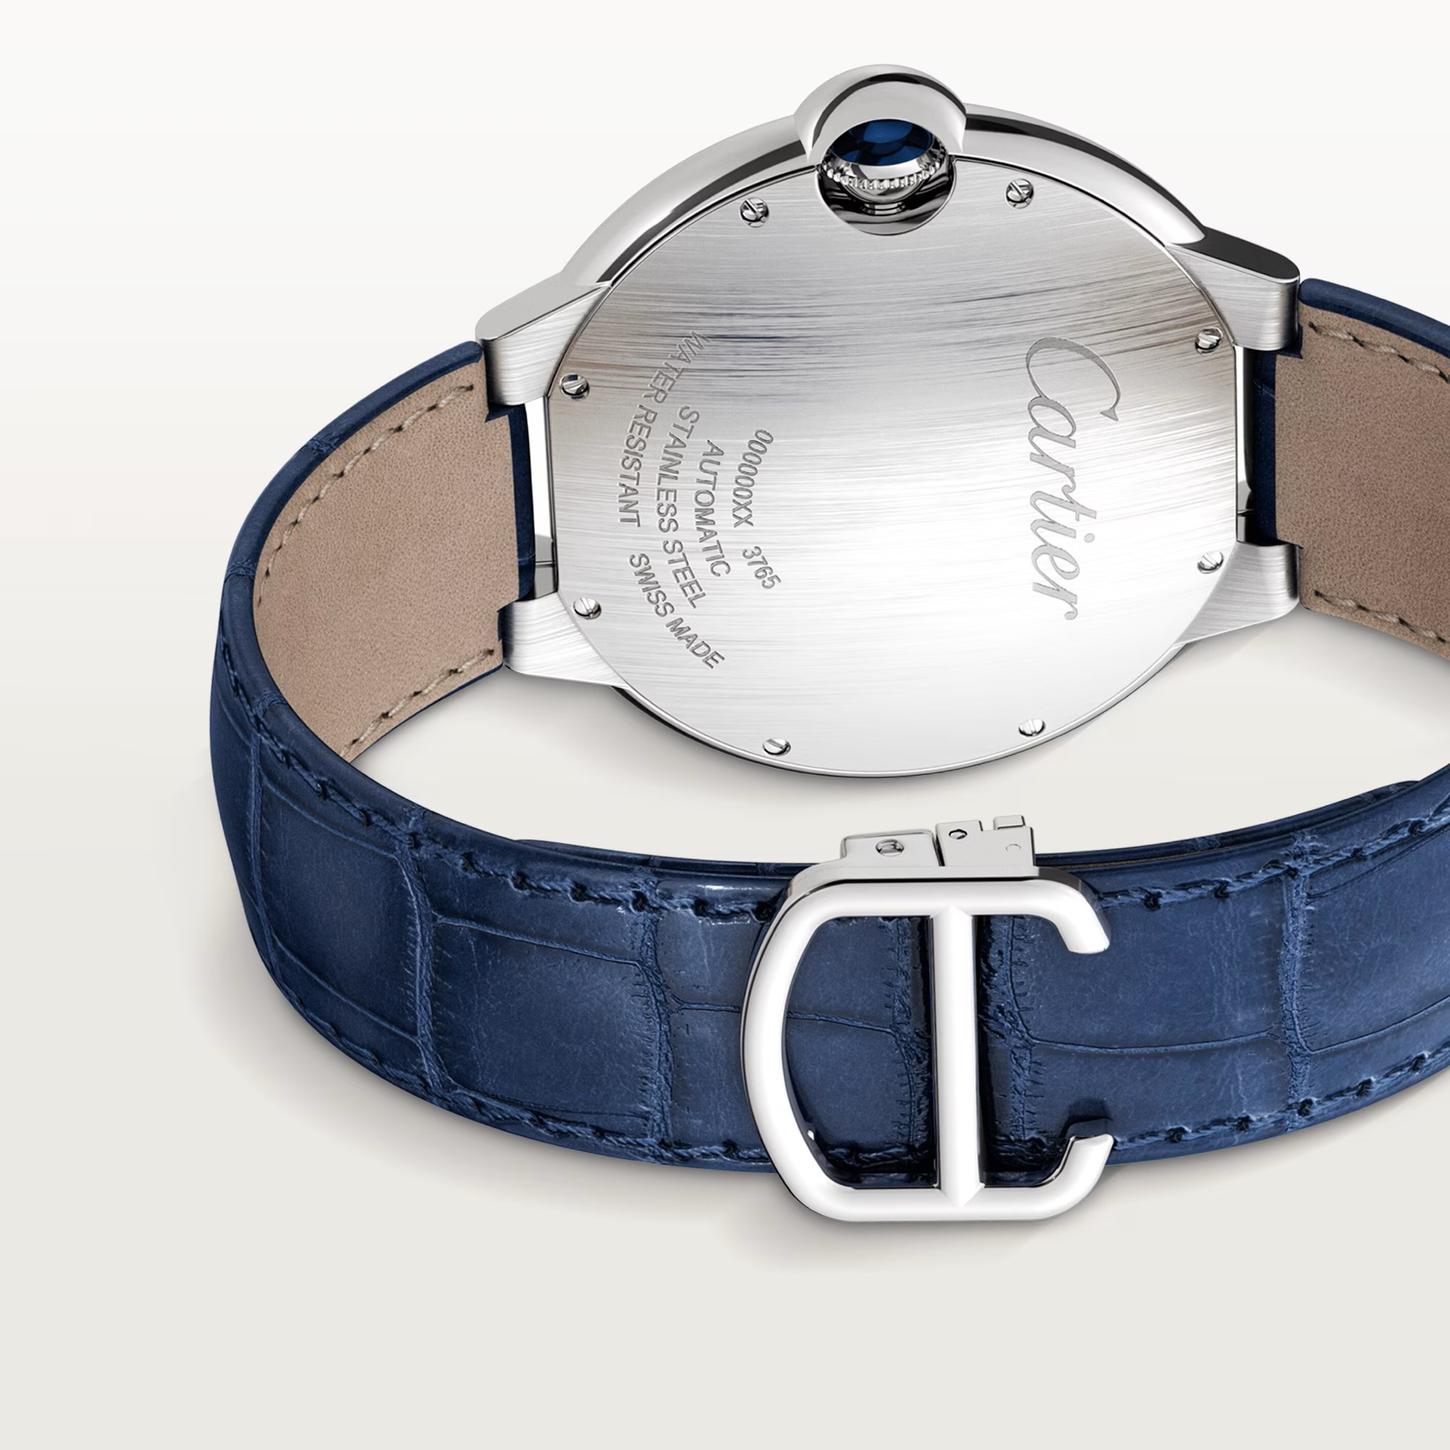 Ballon Blue de Cartier Watch, 42mm 5